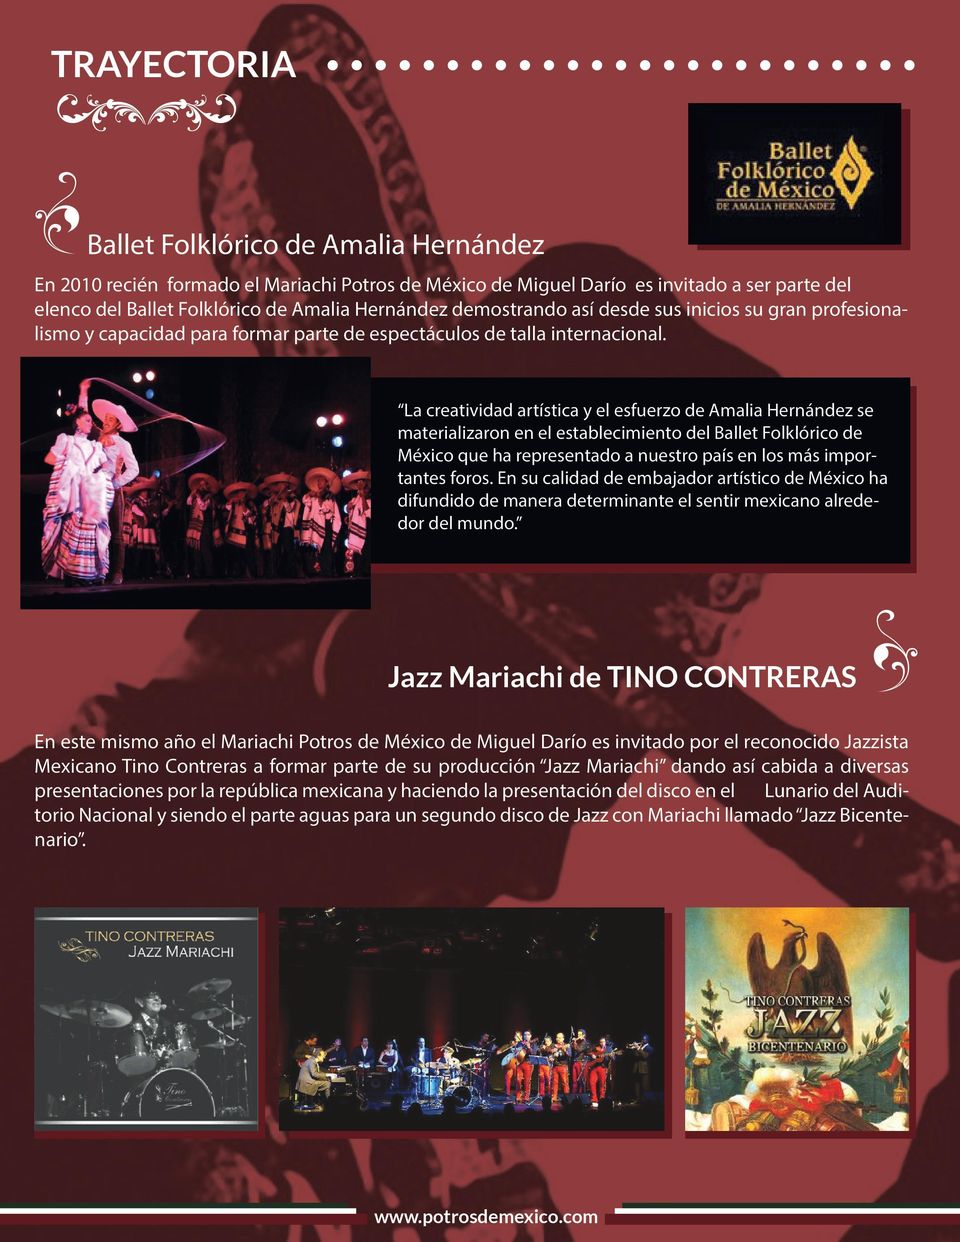 La creatividad artística y el esfuerzo de Amalia Hernández se materializaron en el establecimiento del Ballet Folklórico de México que ha representado a nuestro país en los más importantes foros.